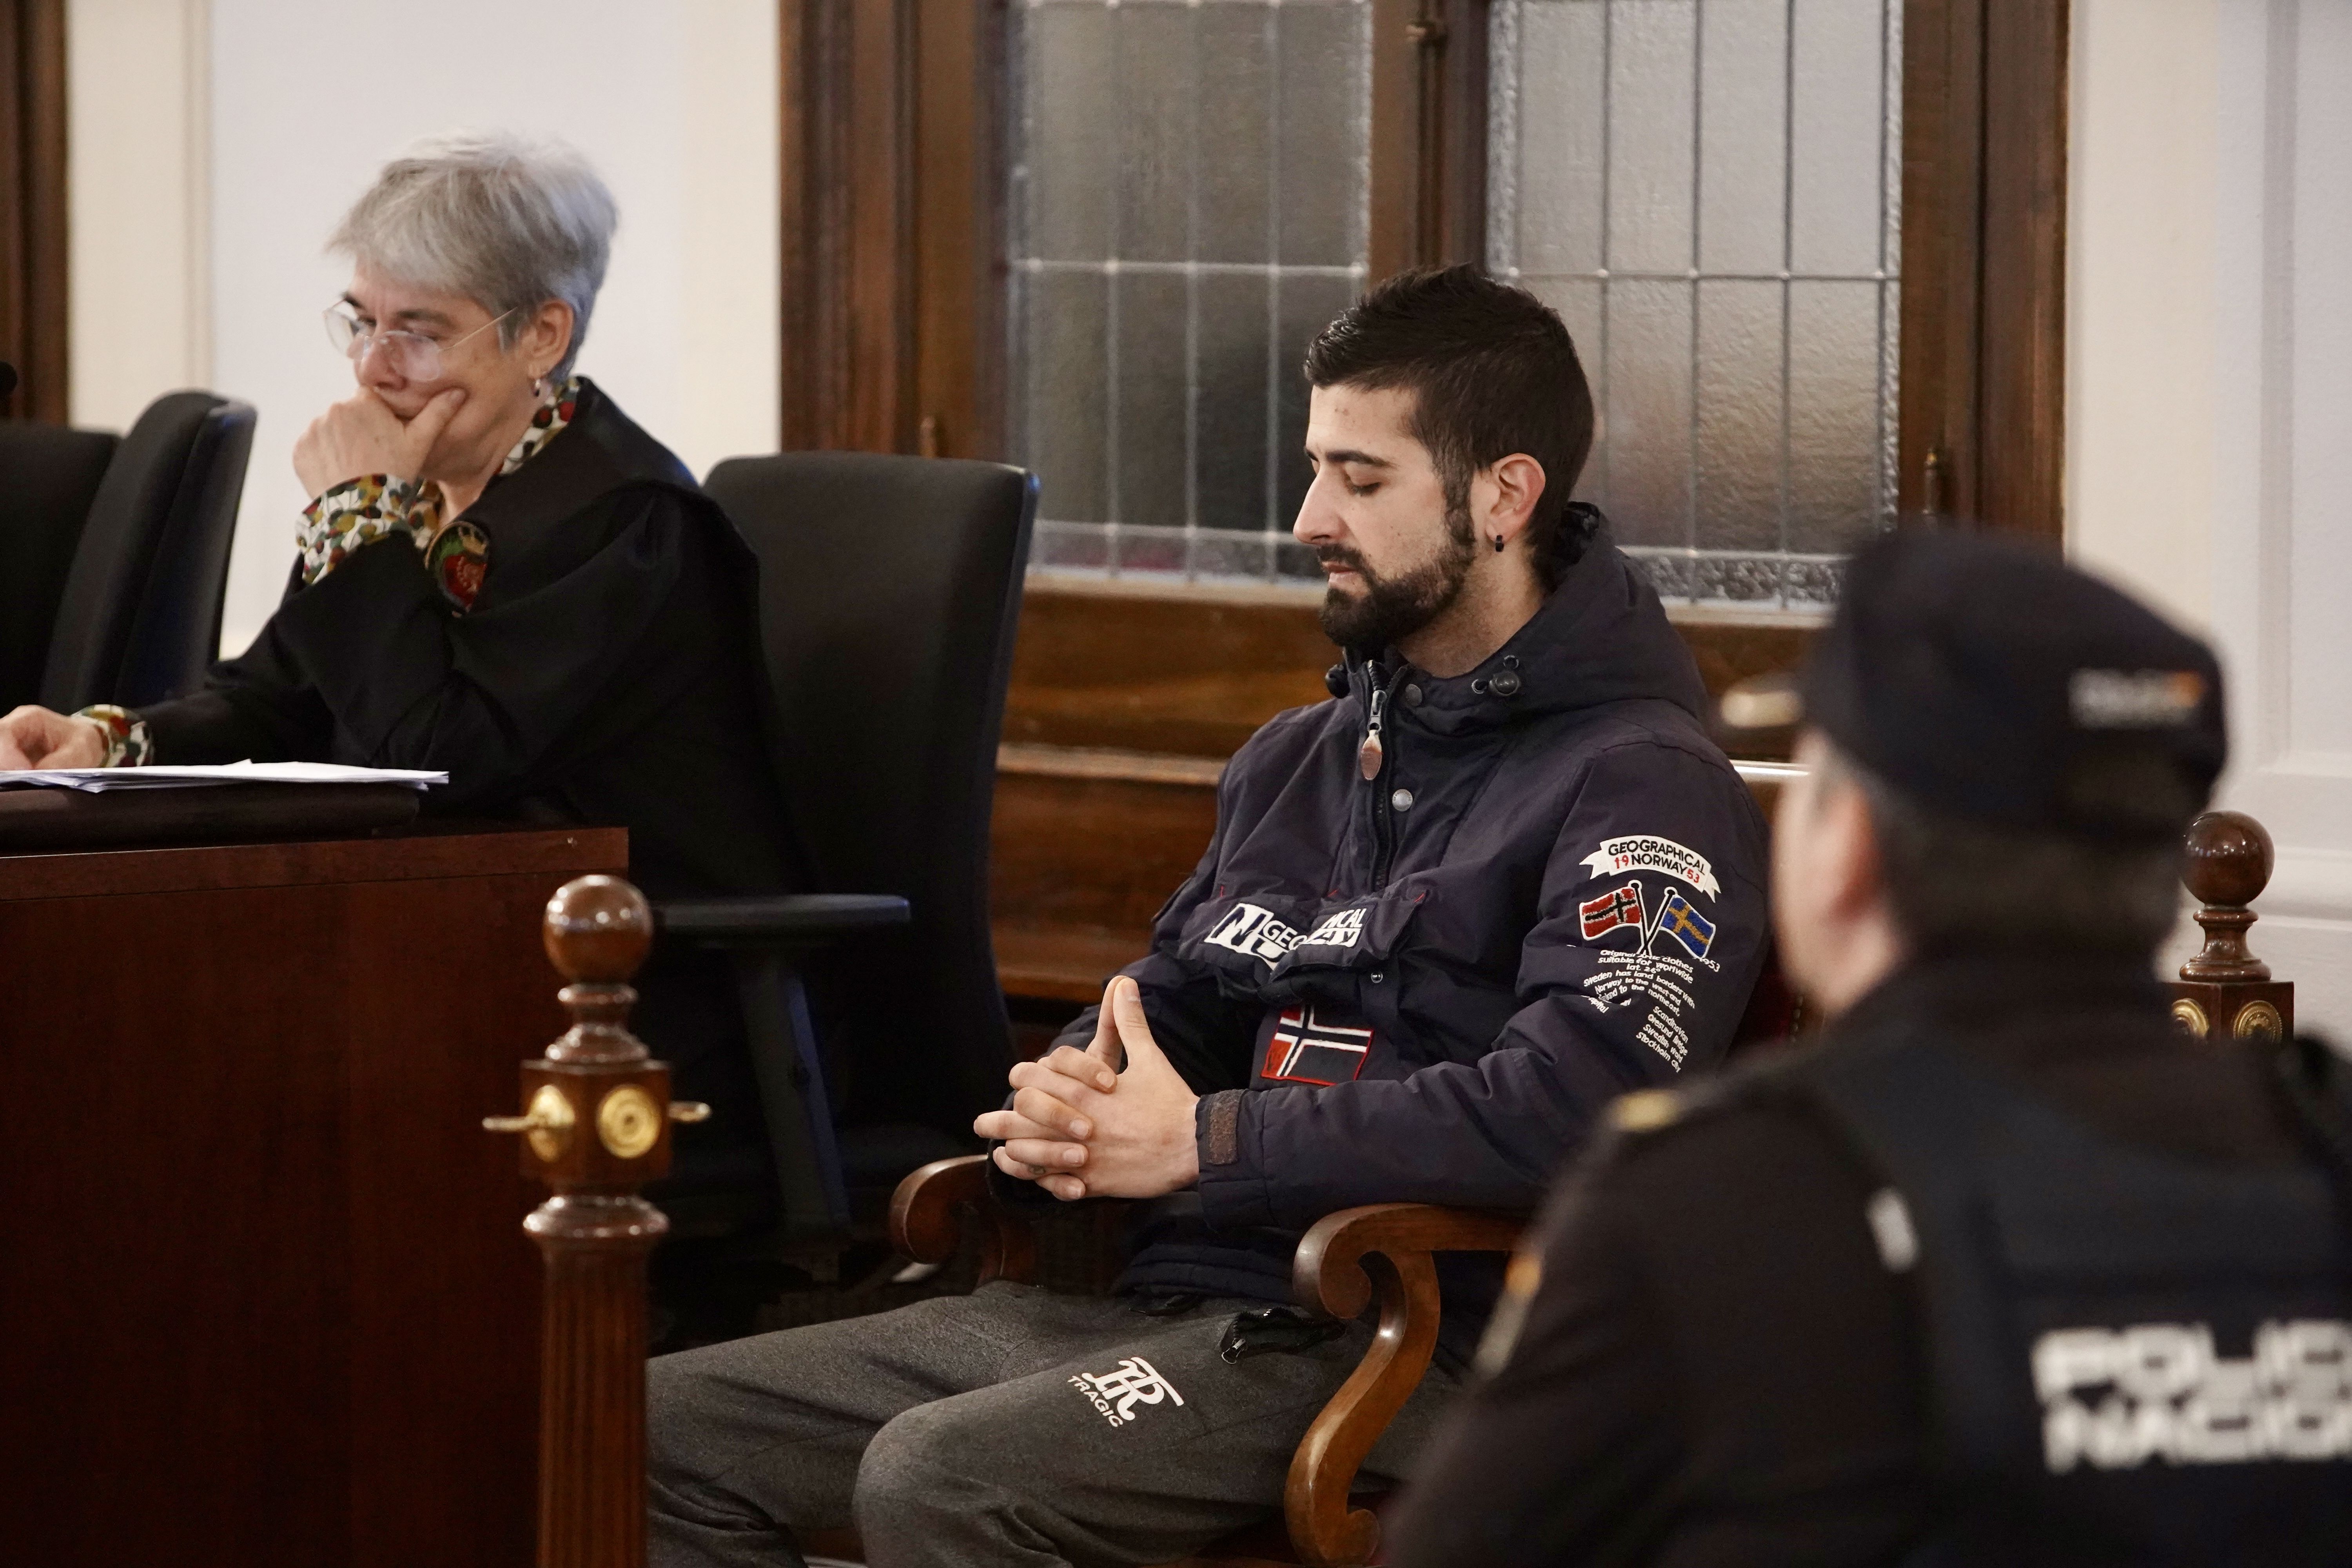 El acusado del crimen de Obispo Almarcha, Ángel M.B., durante la sesión inicial del juicio en la Audiencia Provincial de León. | ICAL